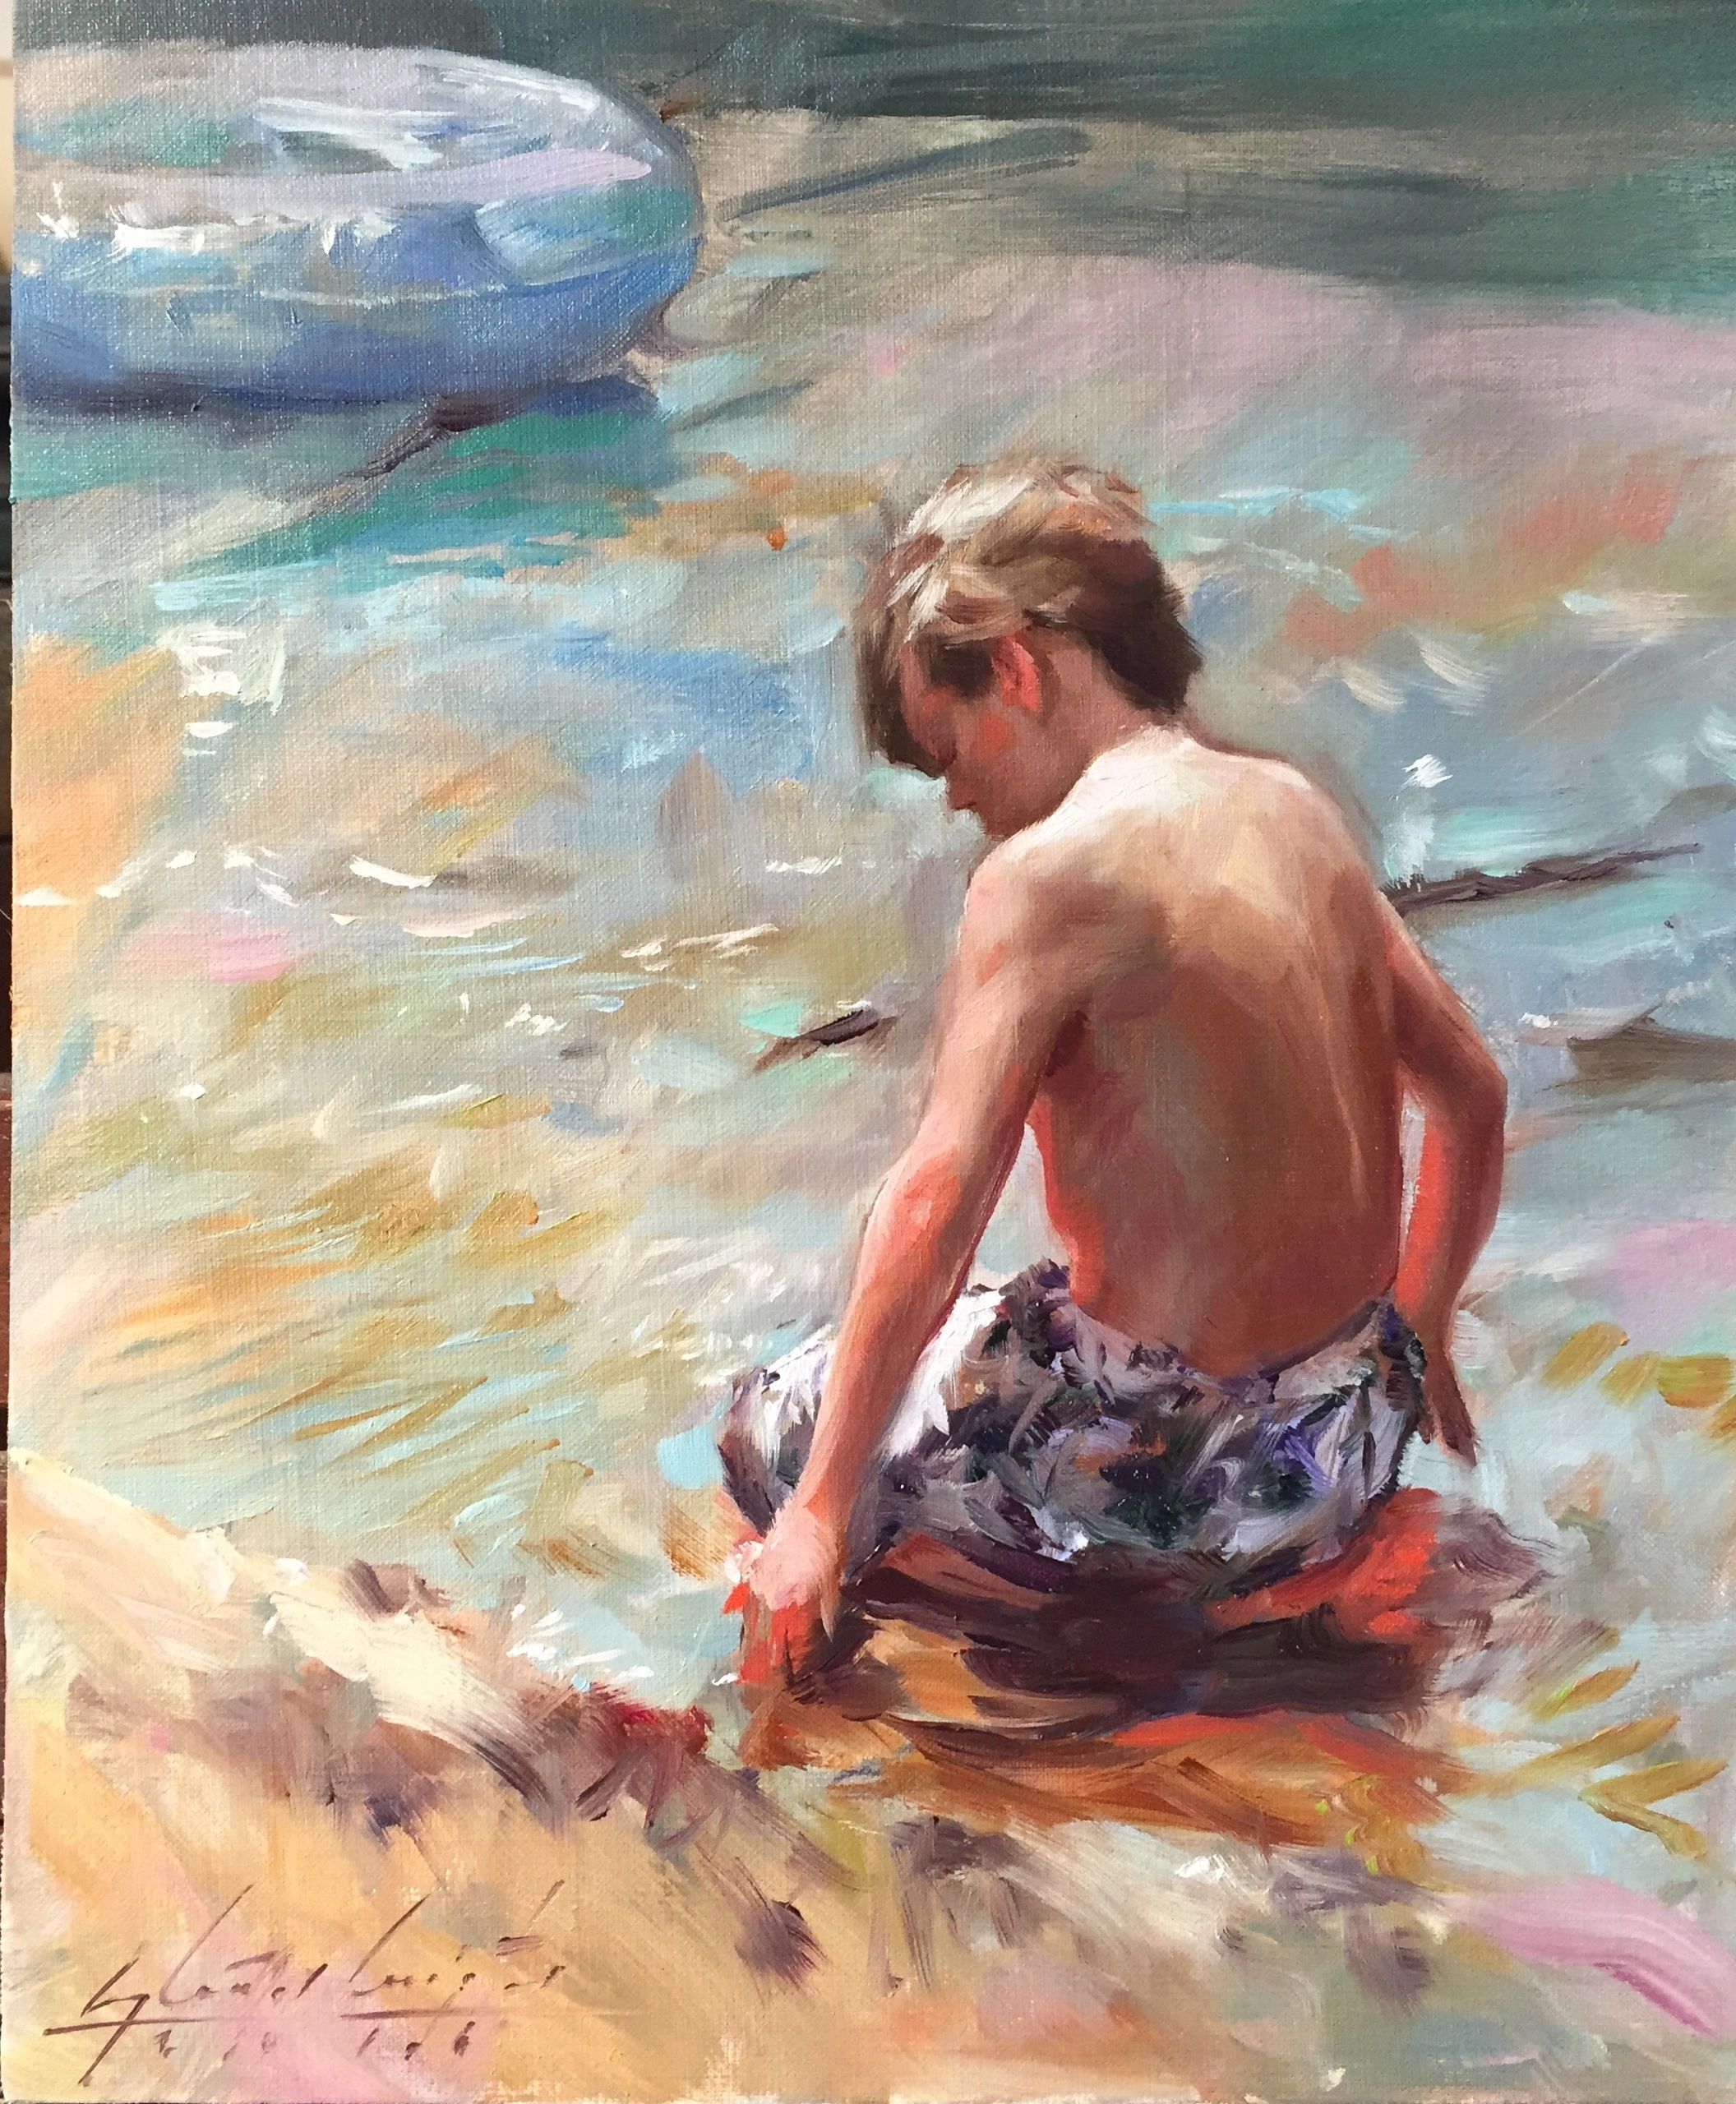 Boy at the beach by Glenn Harrington 